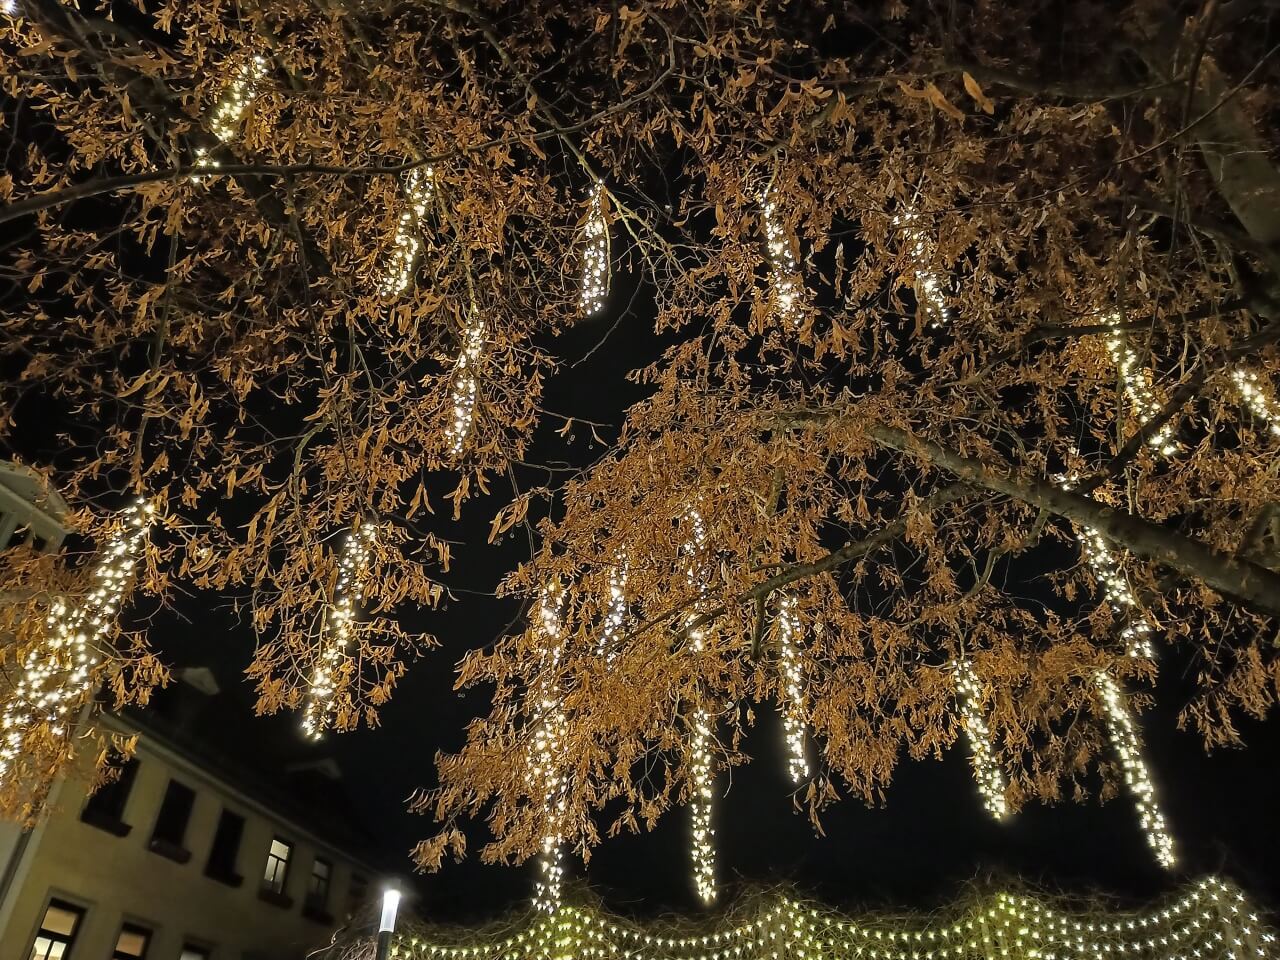 Weihnachtsmarkt Weimar - vom Baum herabhängende Lichterketten